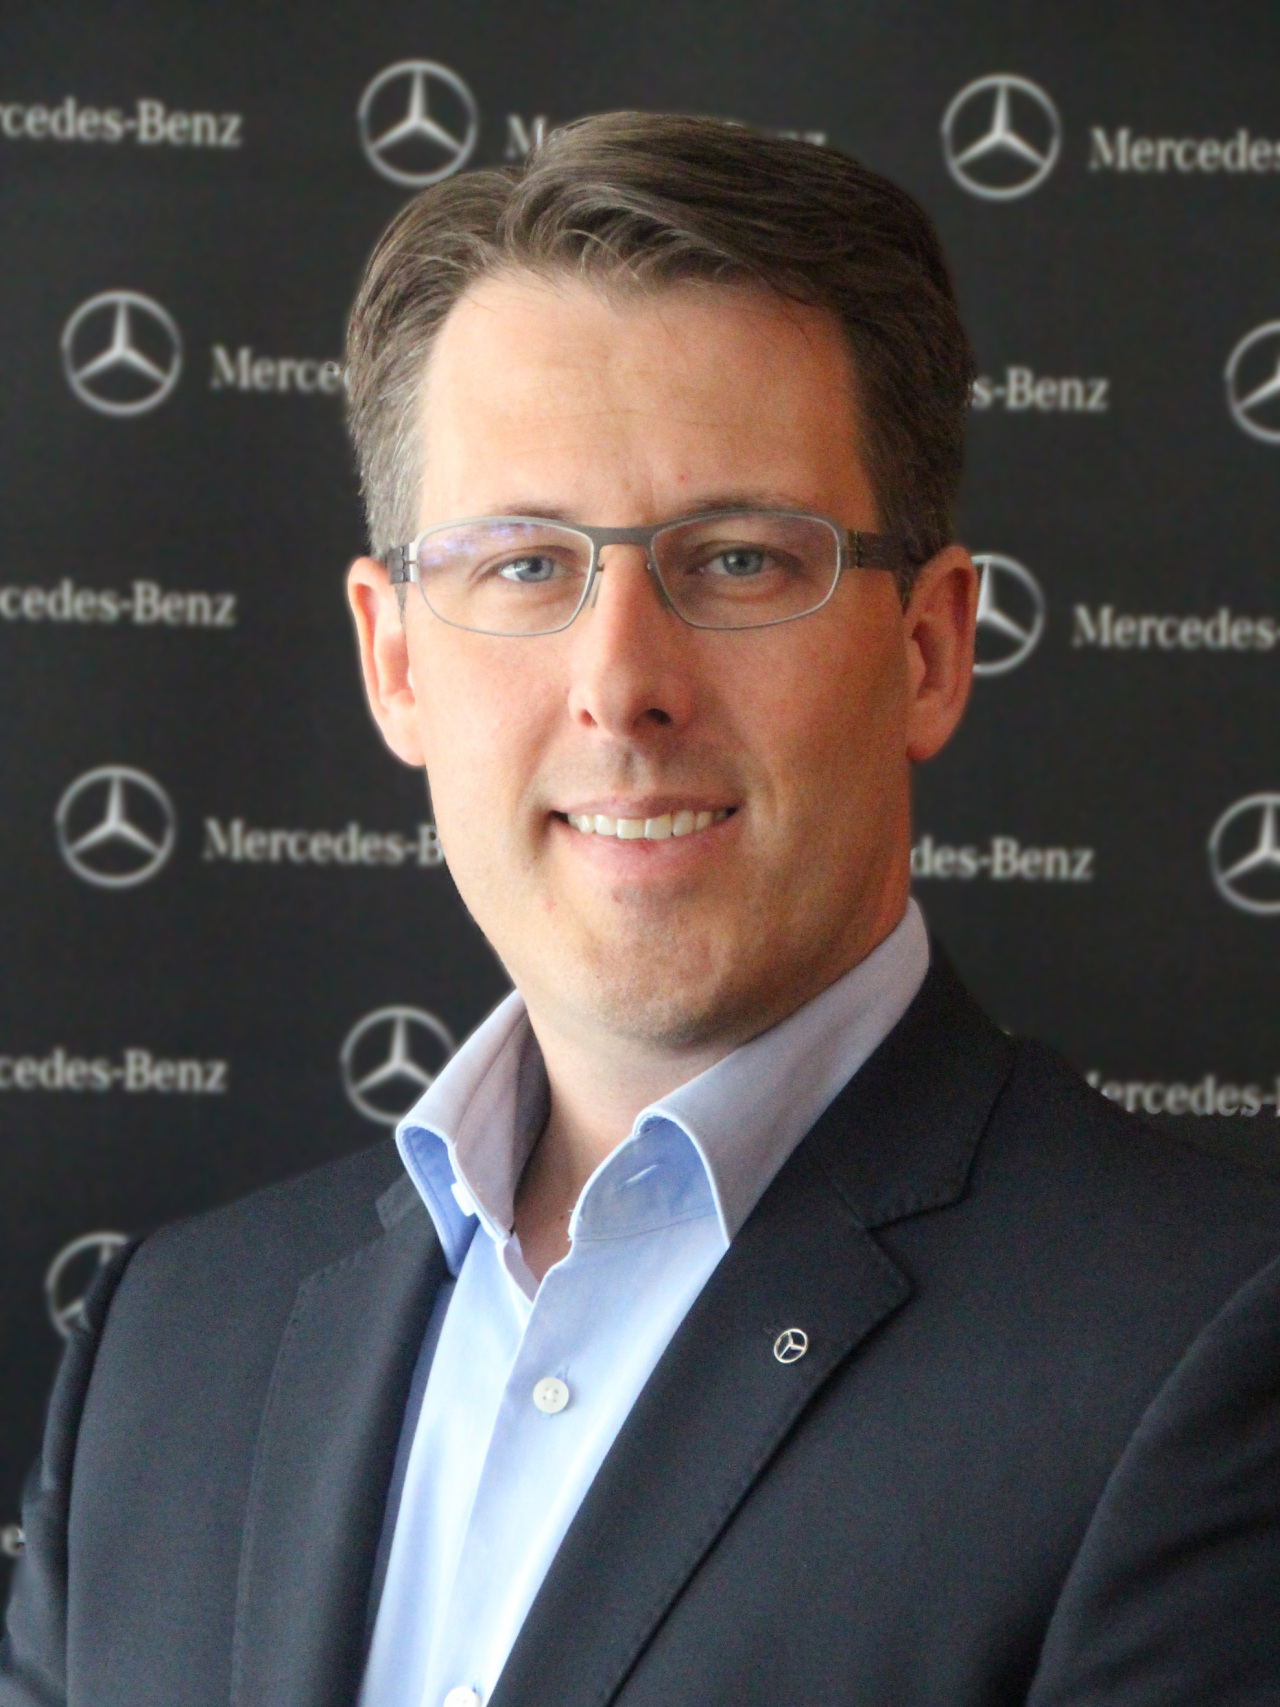 Thomas Klein, incoming President and CEO of Mercedes-Benz Korea